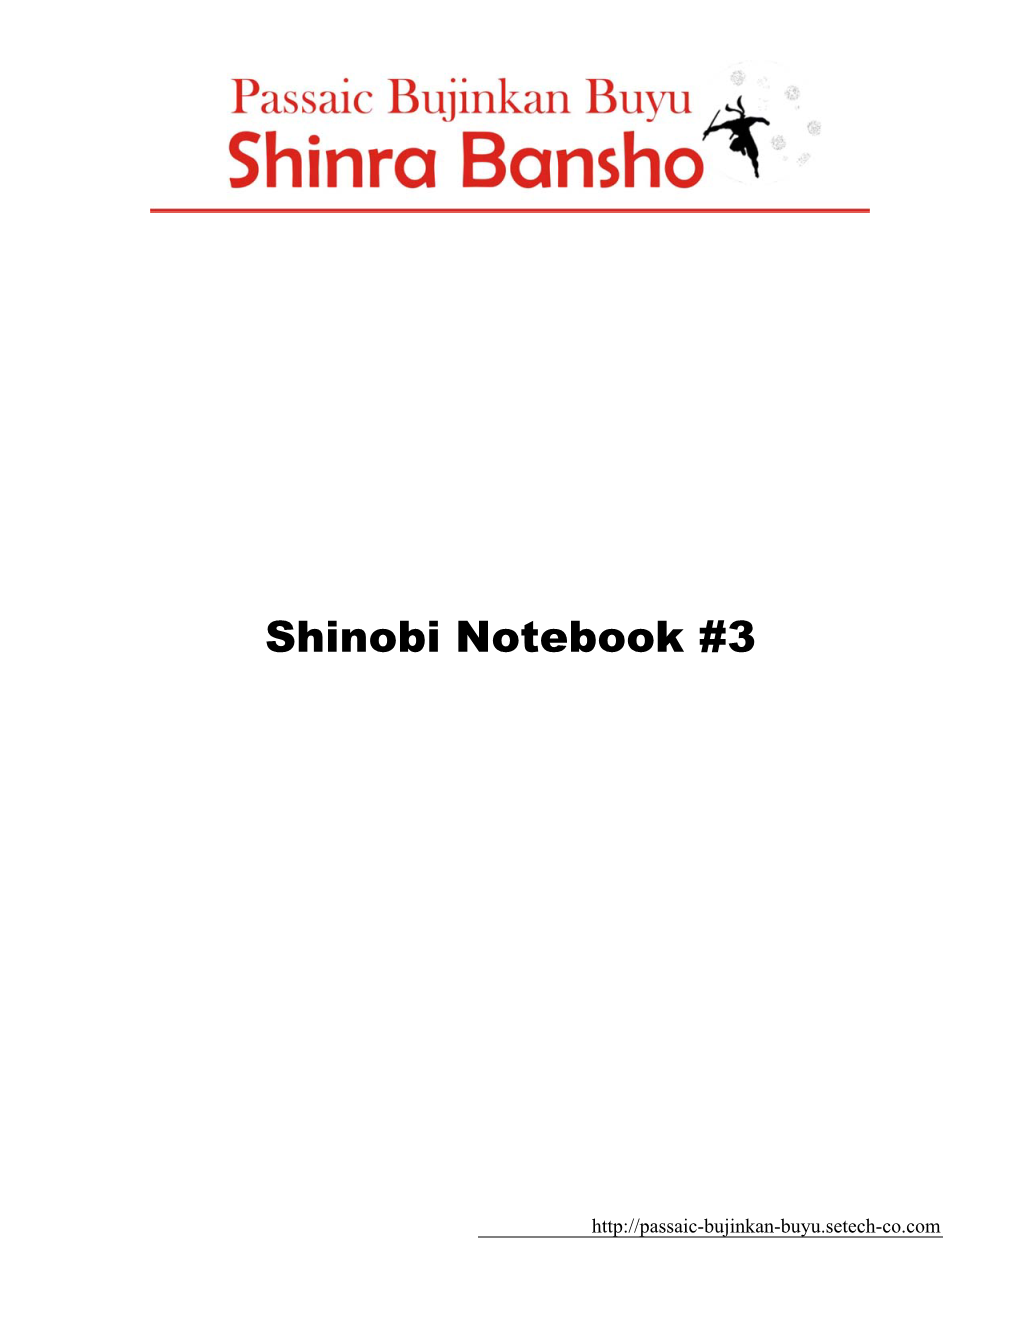 Shinobi Notebook #3